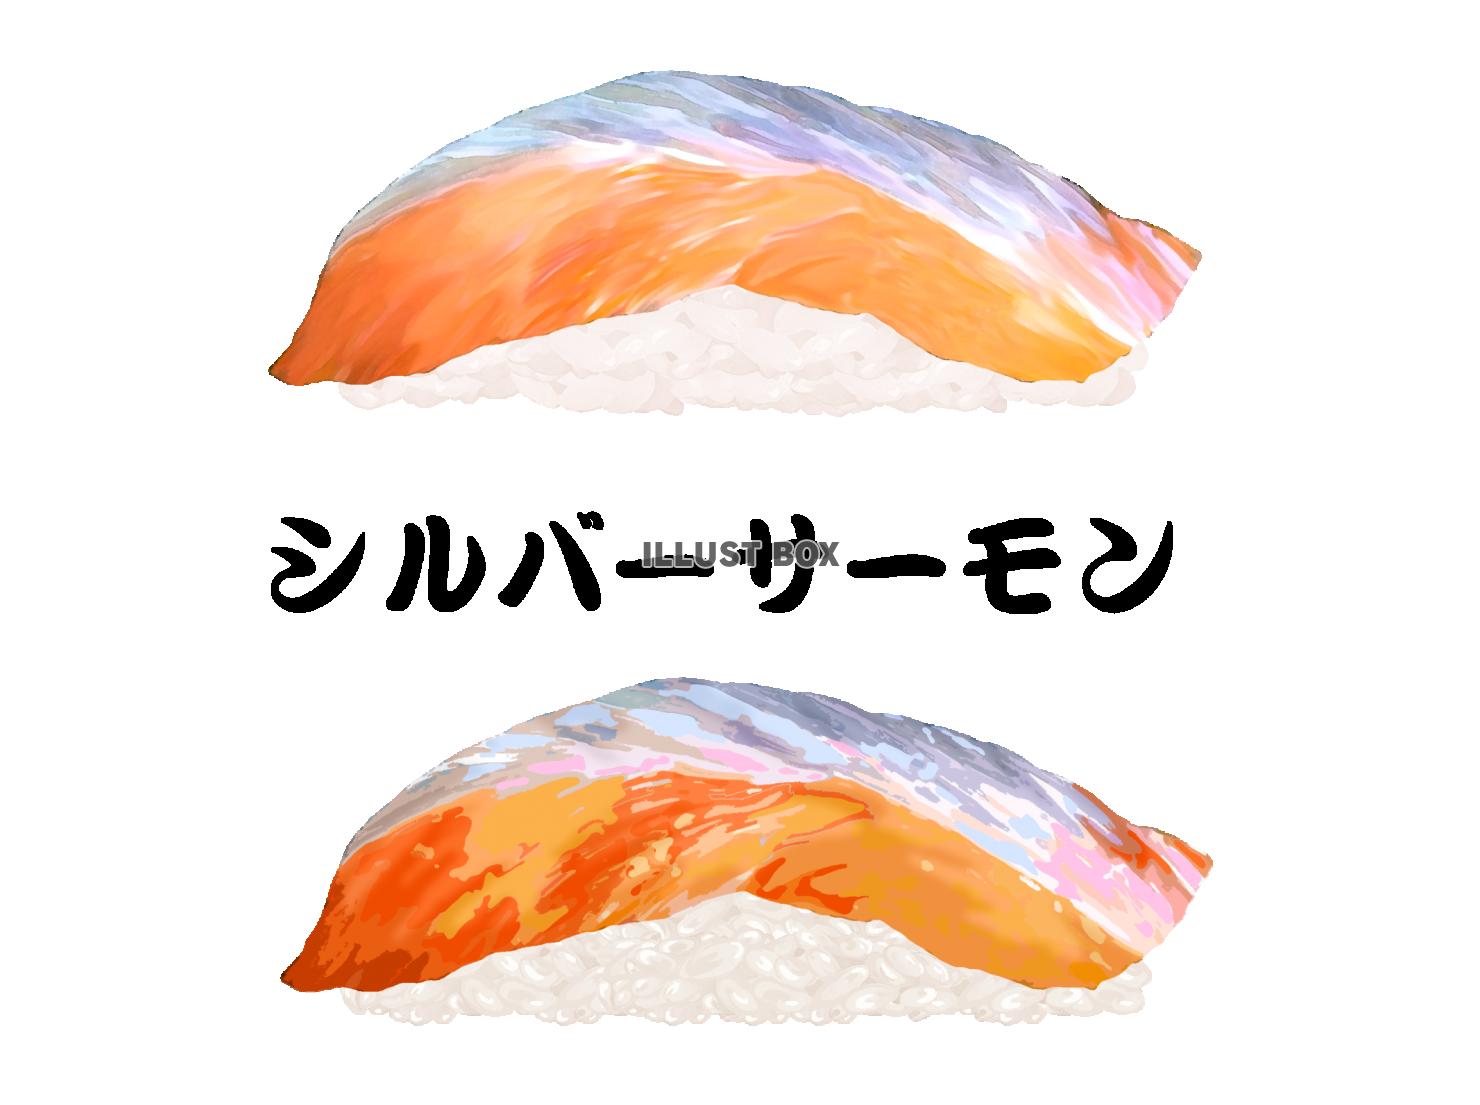 寿司-シルバーサーモン